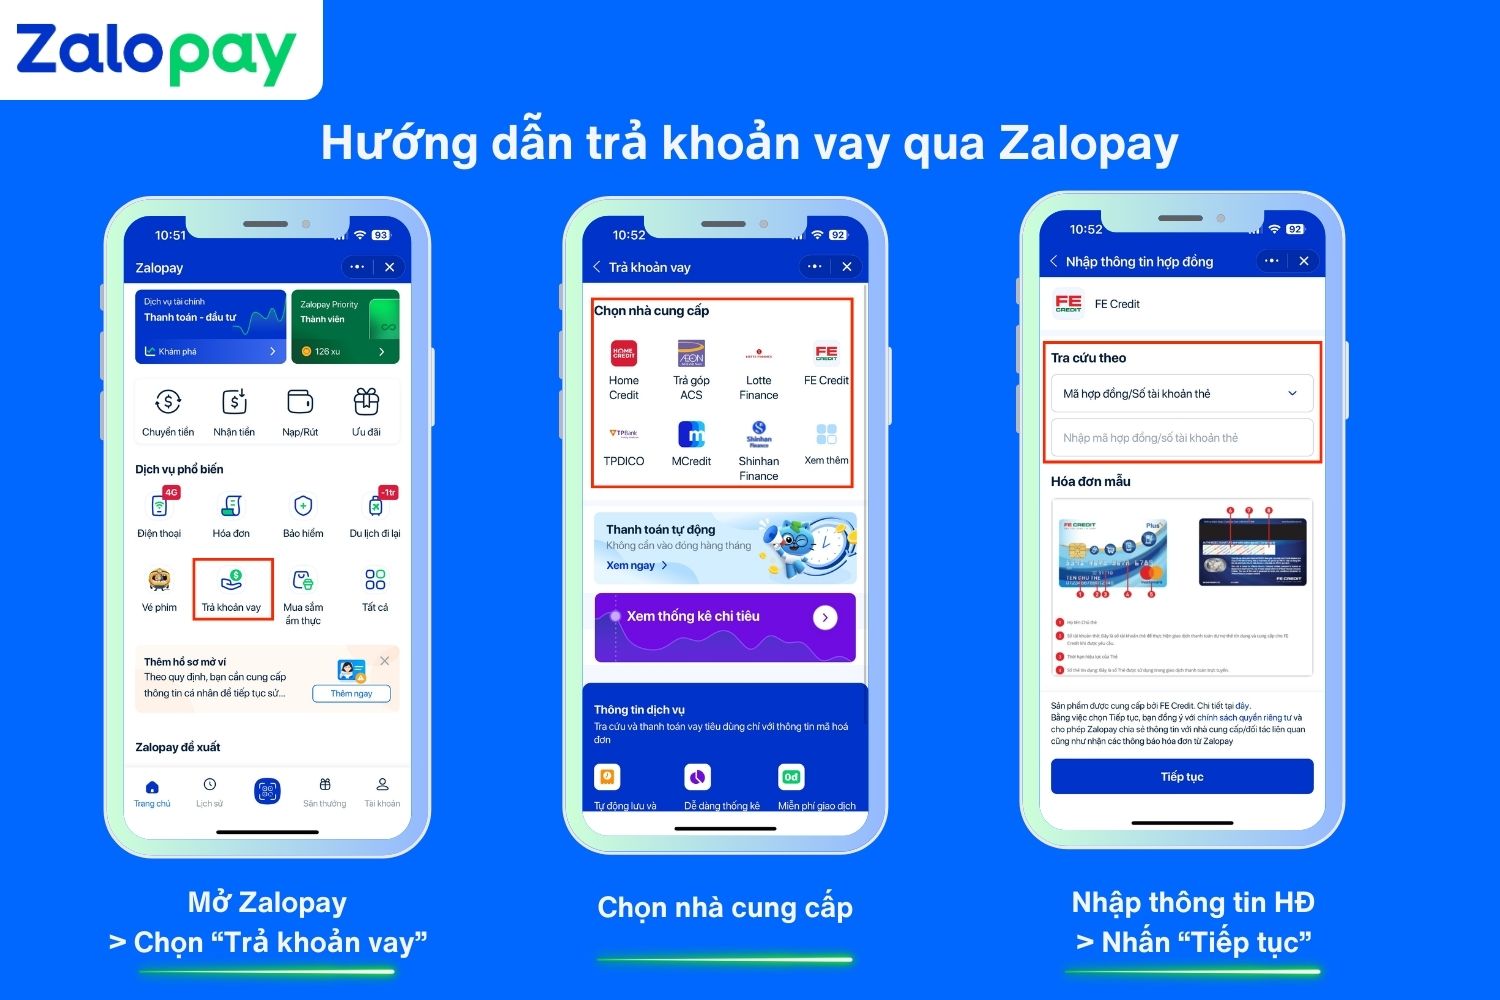 Hướng dẫn trả khoản vay trên ứng dụng Zalopay